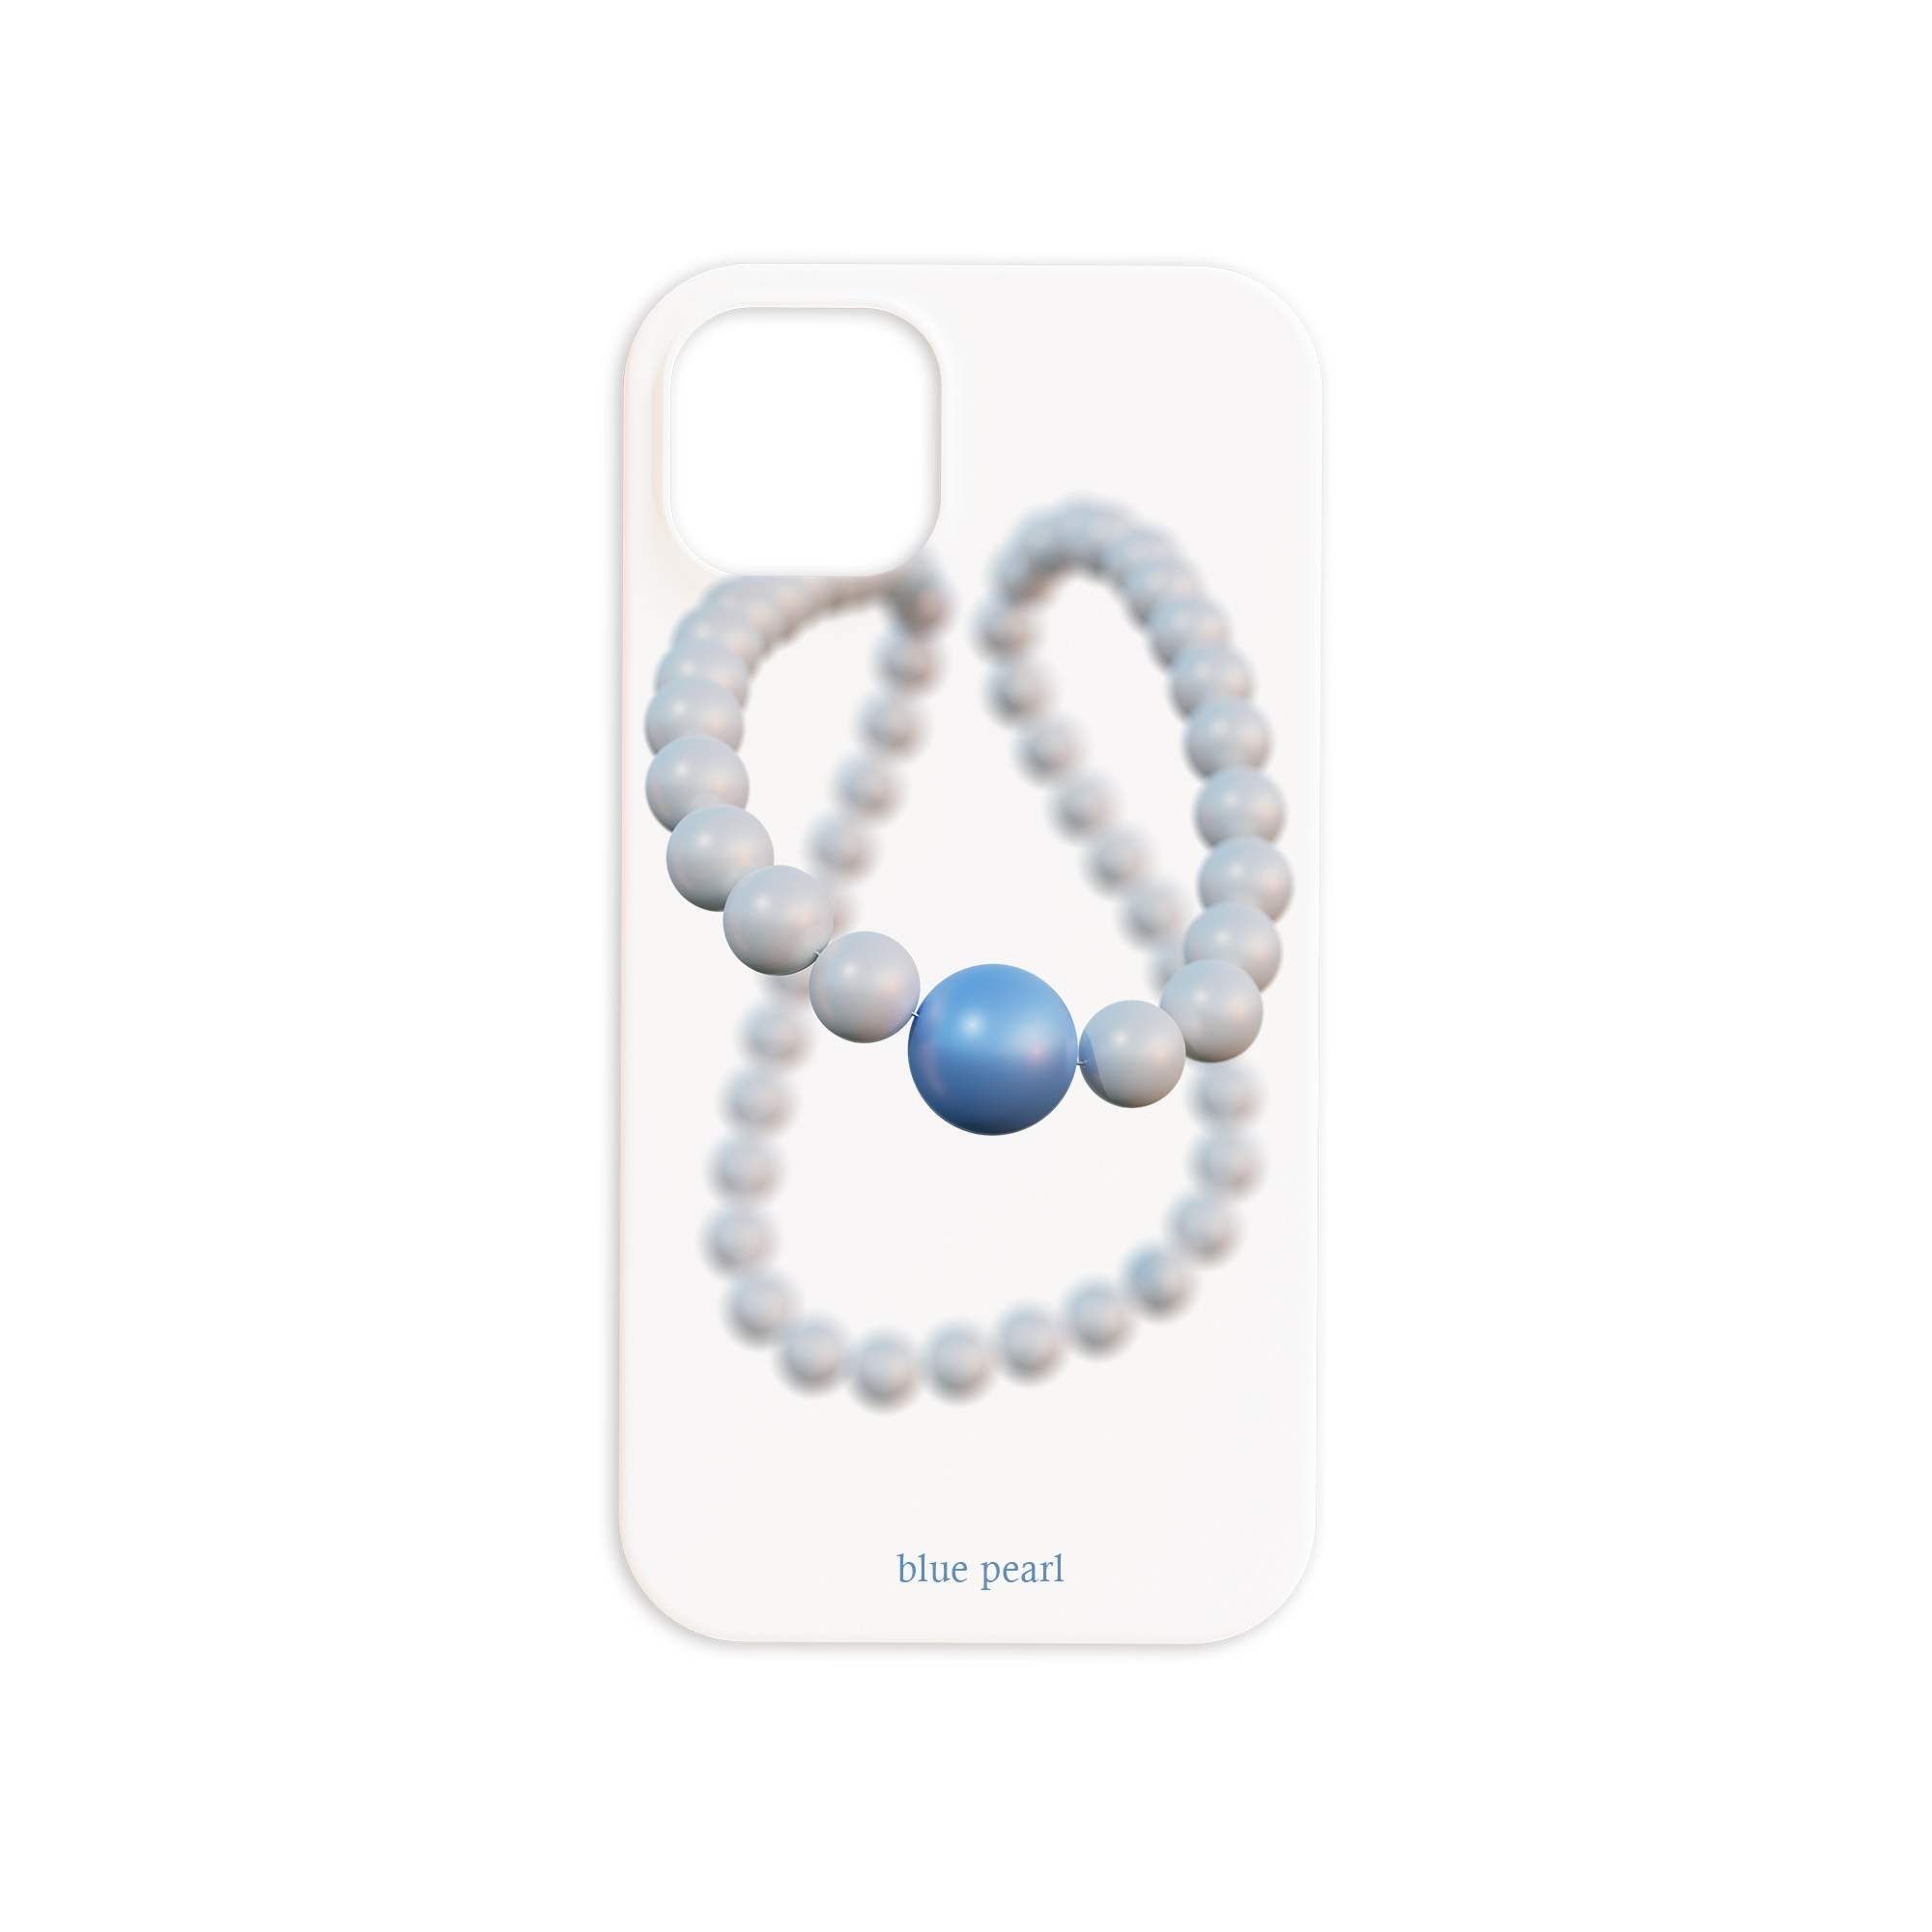 To. Selah: blue pearl